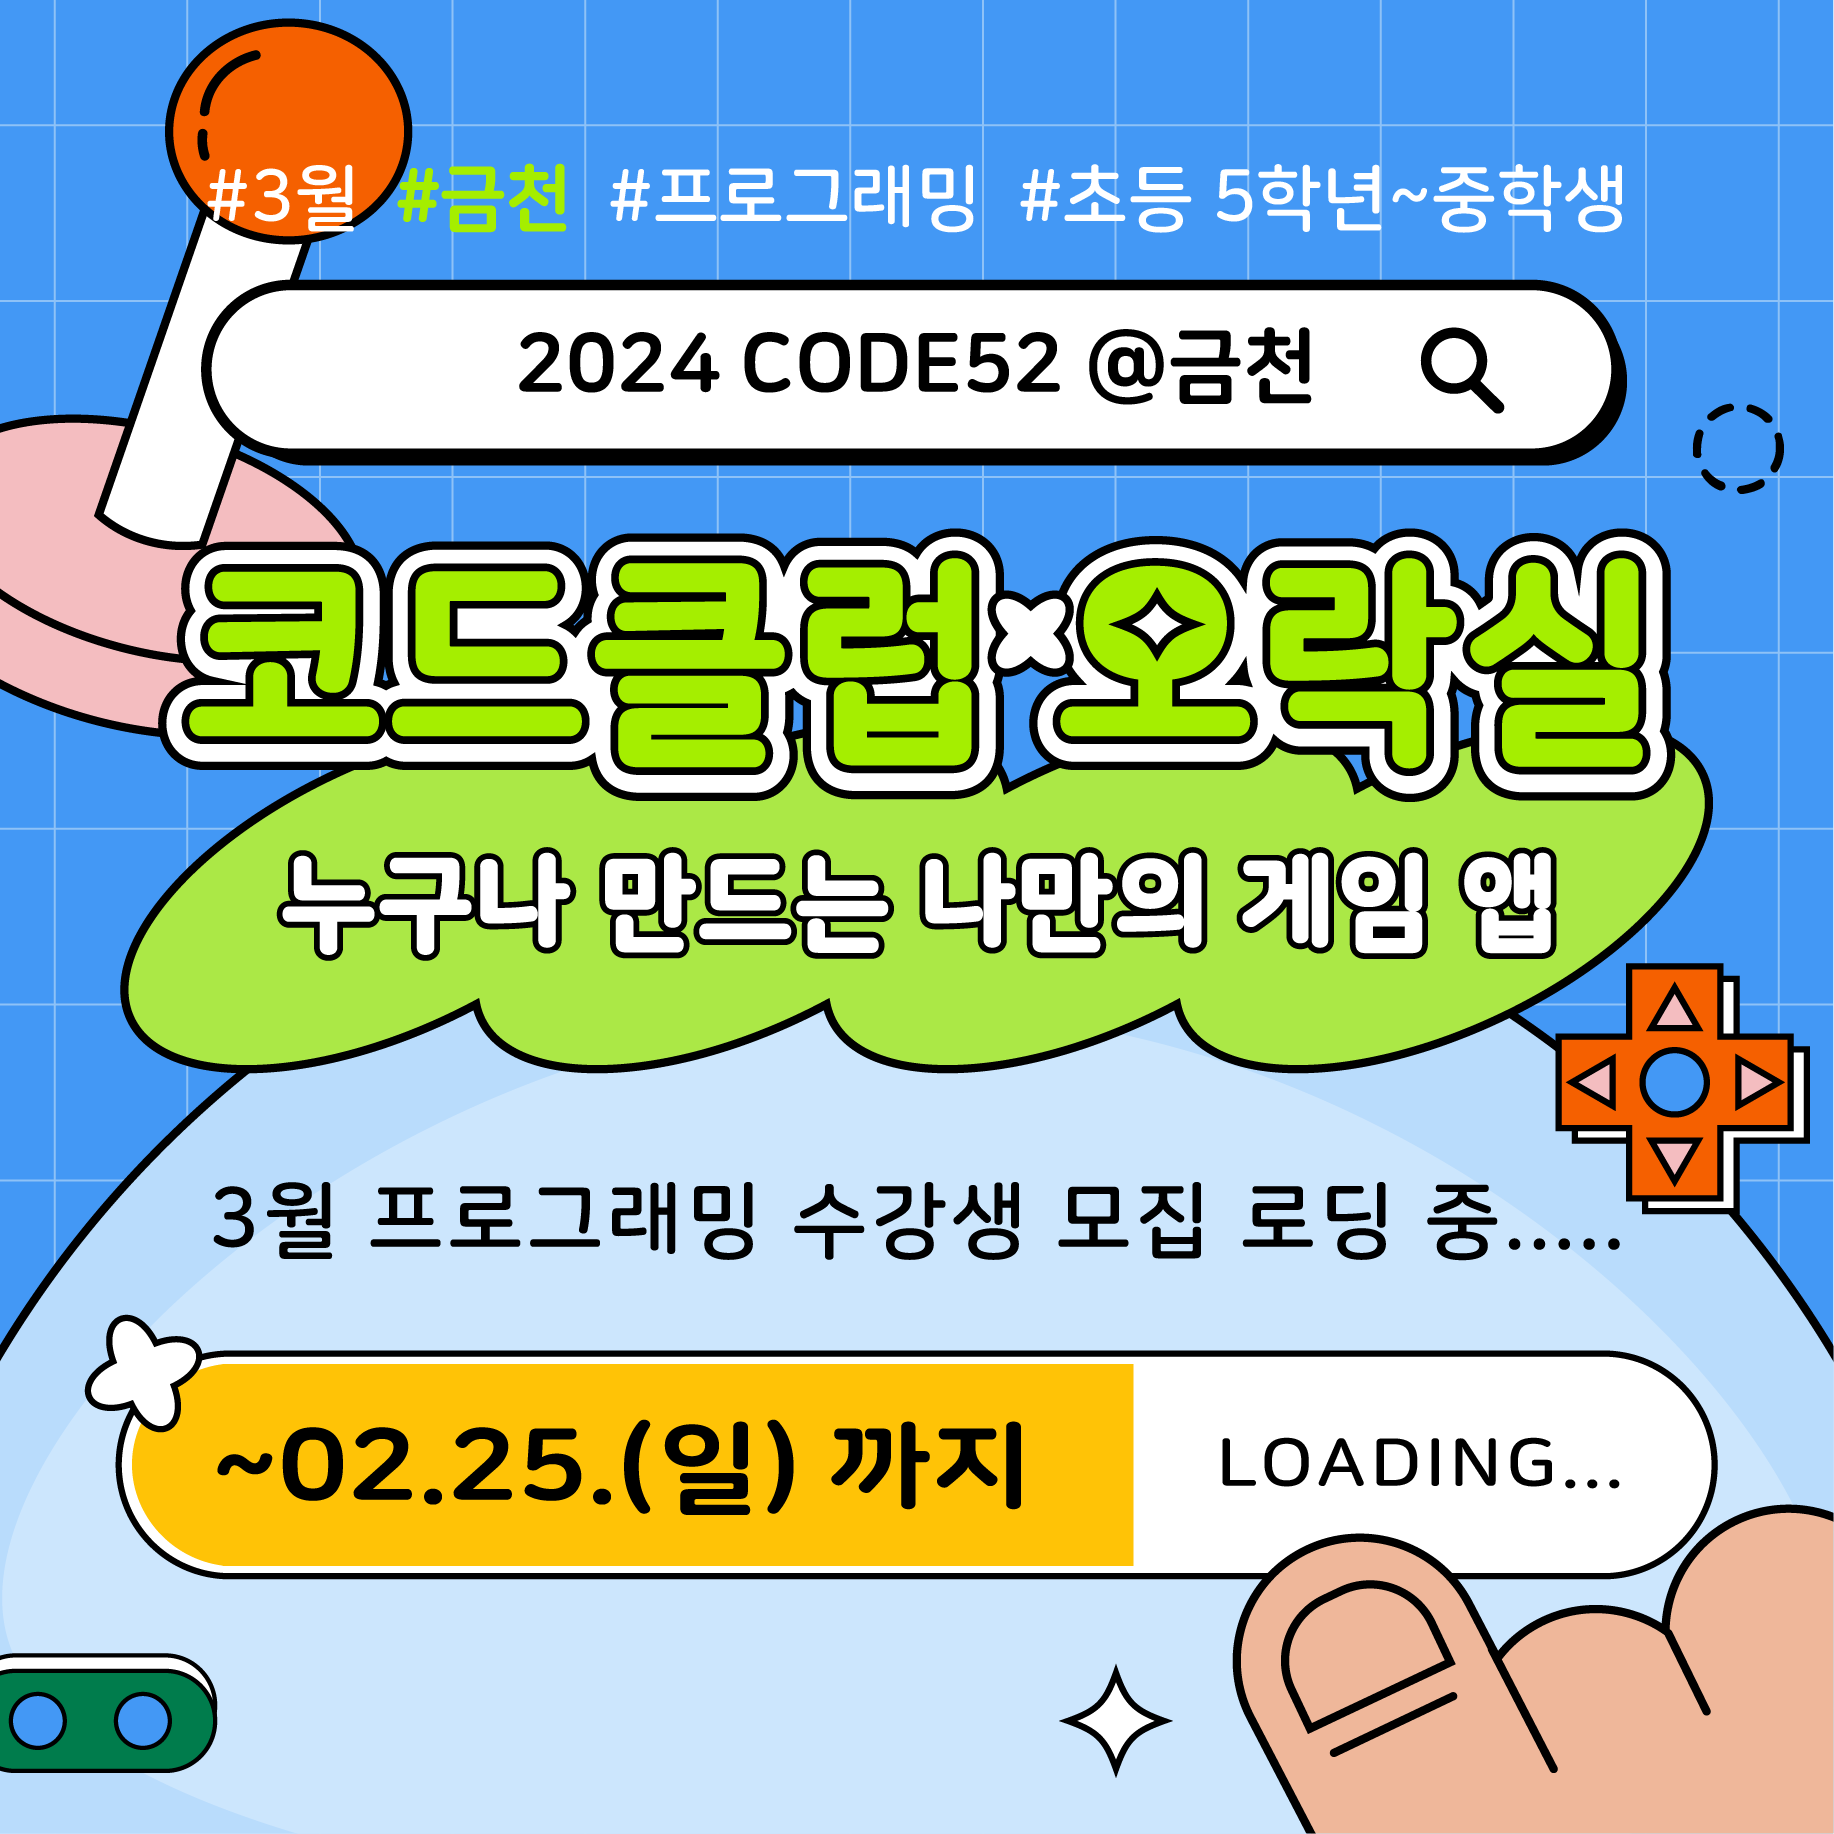 [토요코딩교실] 2024 CODE52 @금천 3월 프로그래밍 교육